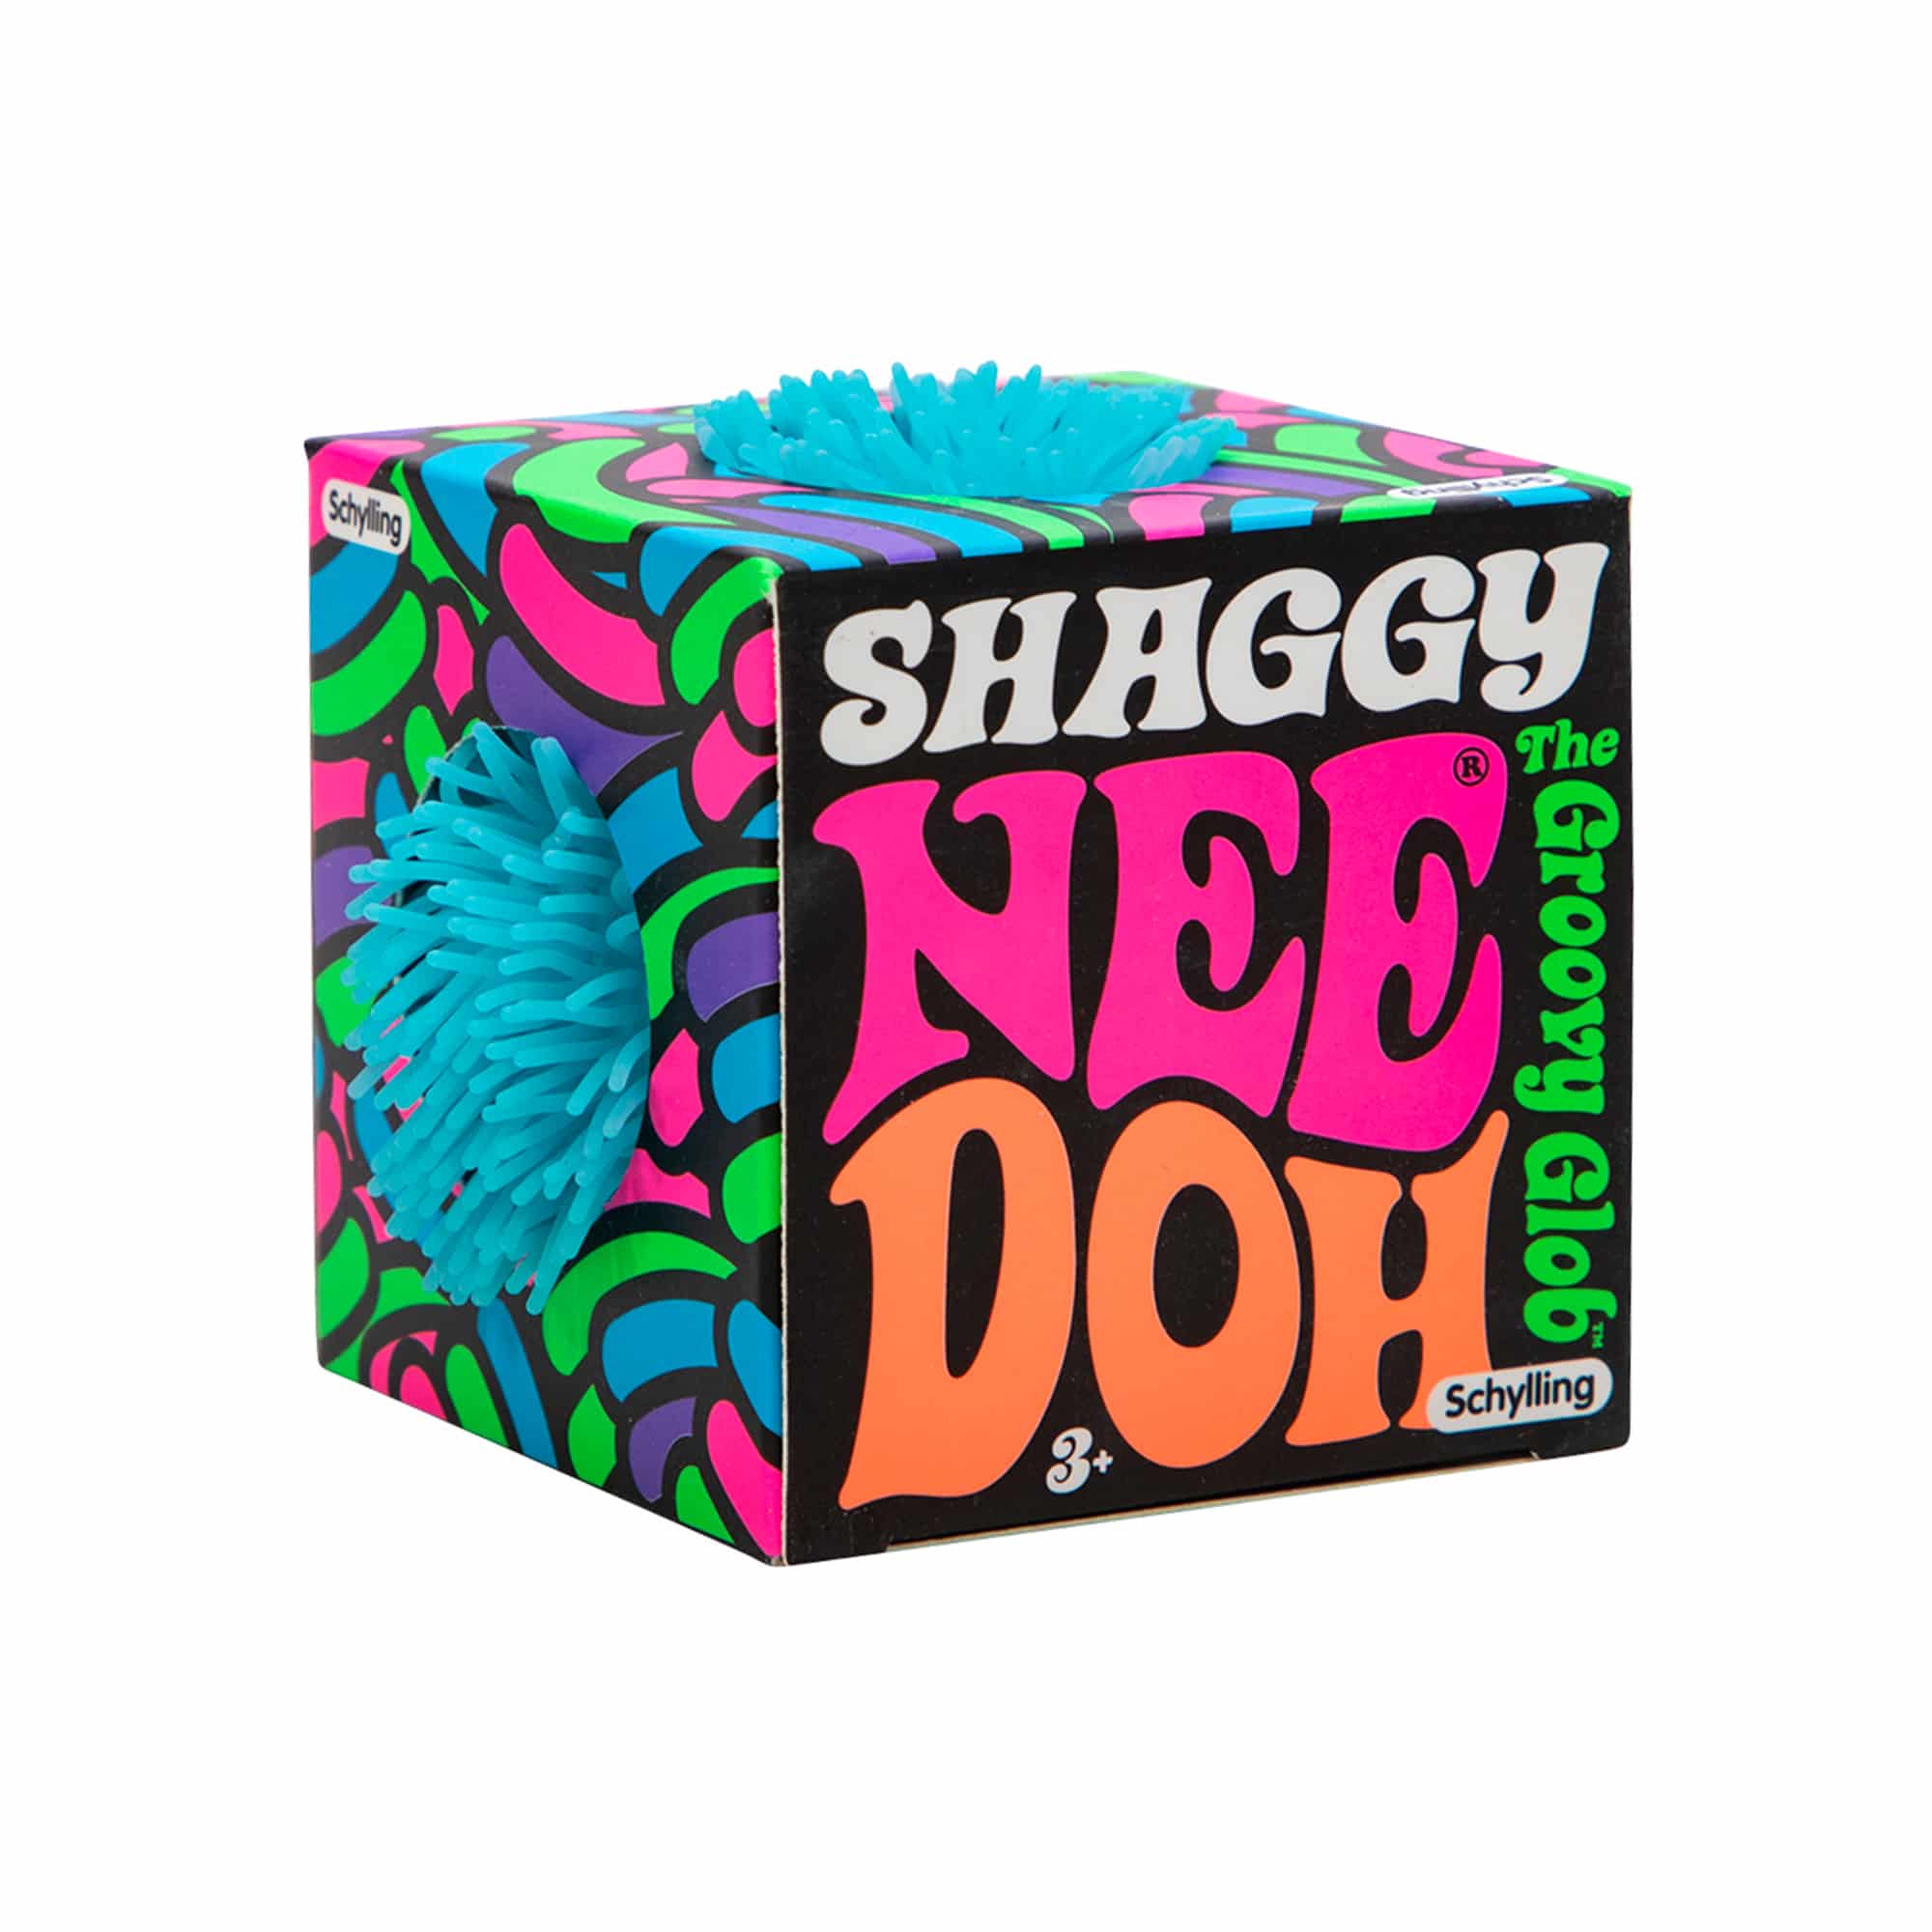 Shaggy Nee Doh - Twinkle Twinkle Little One